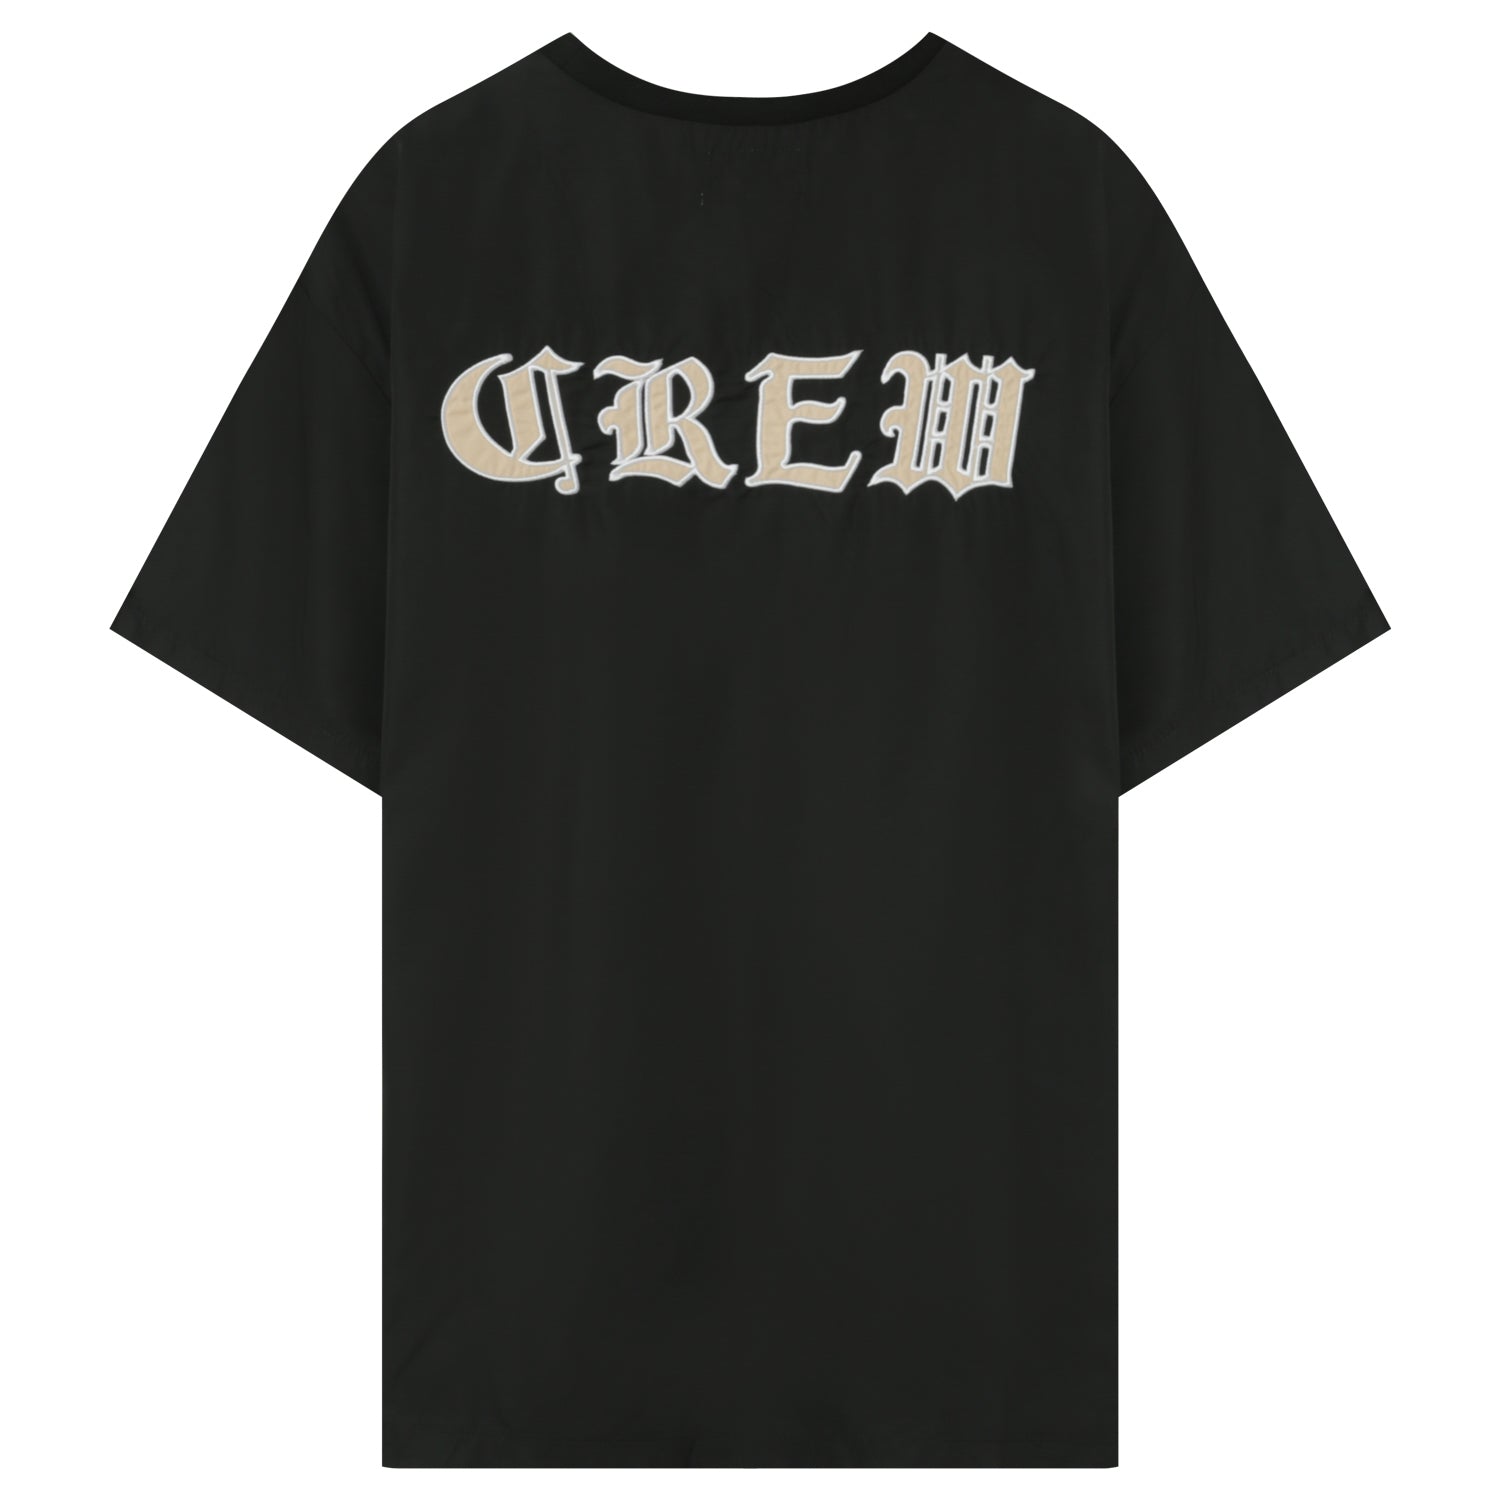 Sixth June - T-shirt oversize gothique Noir